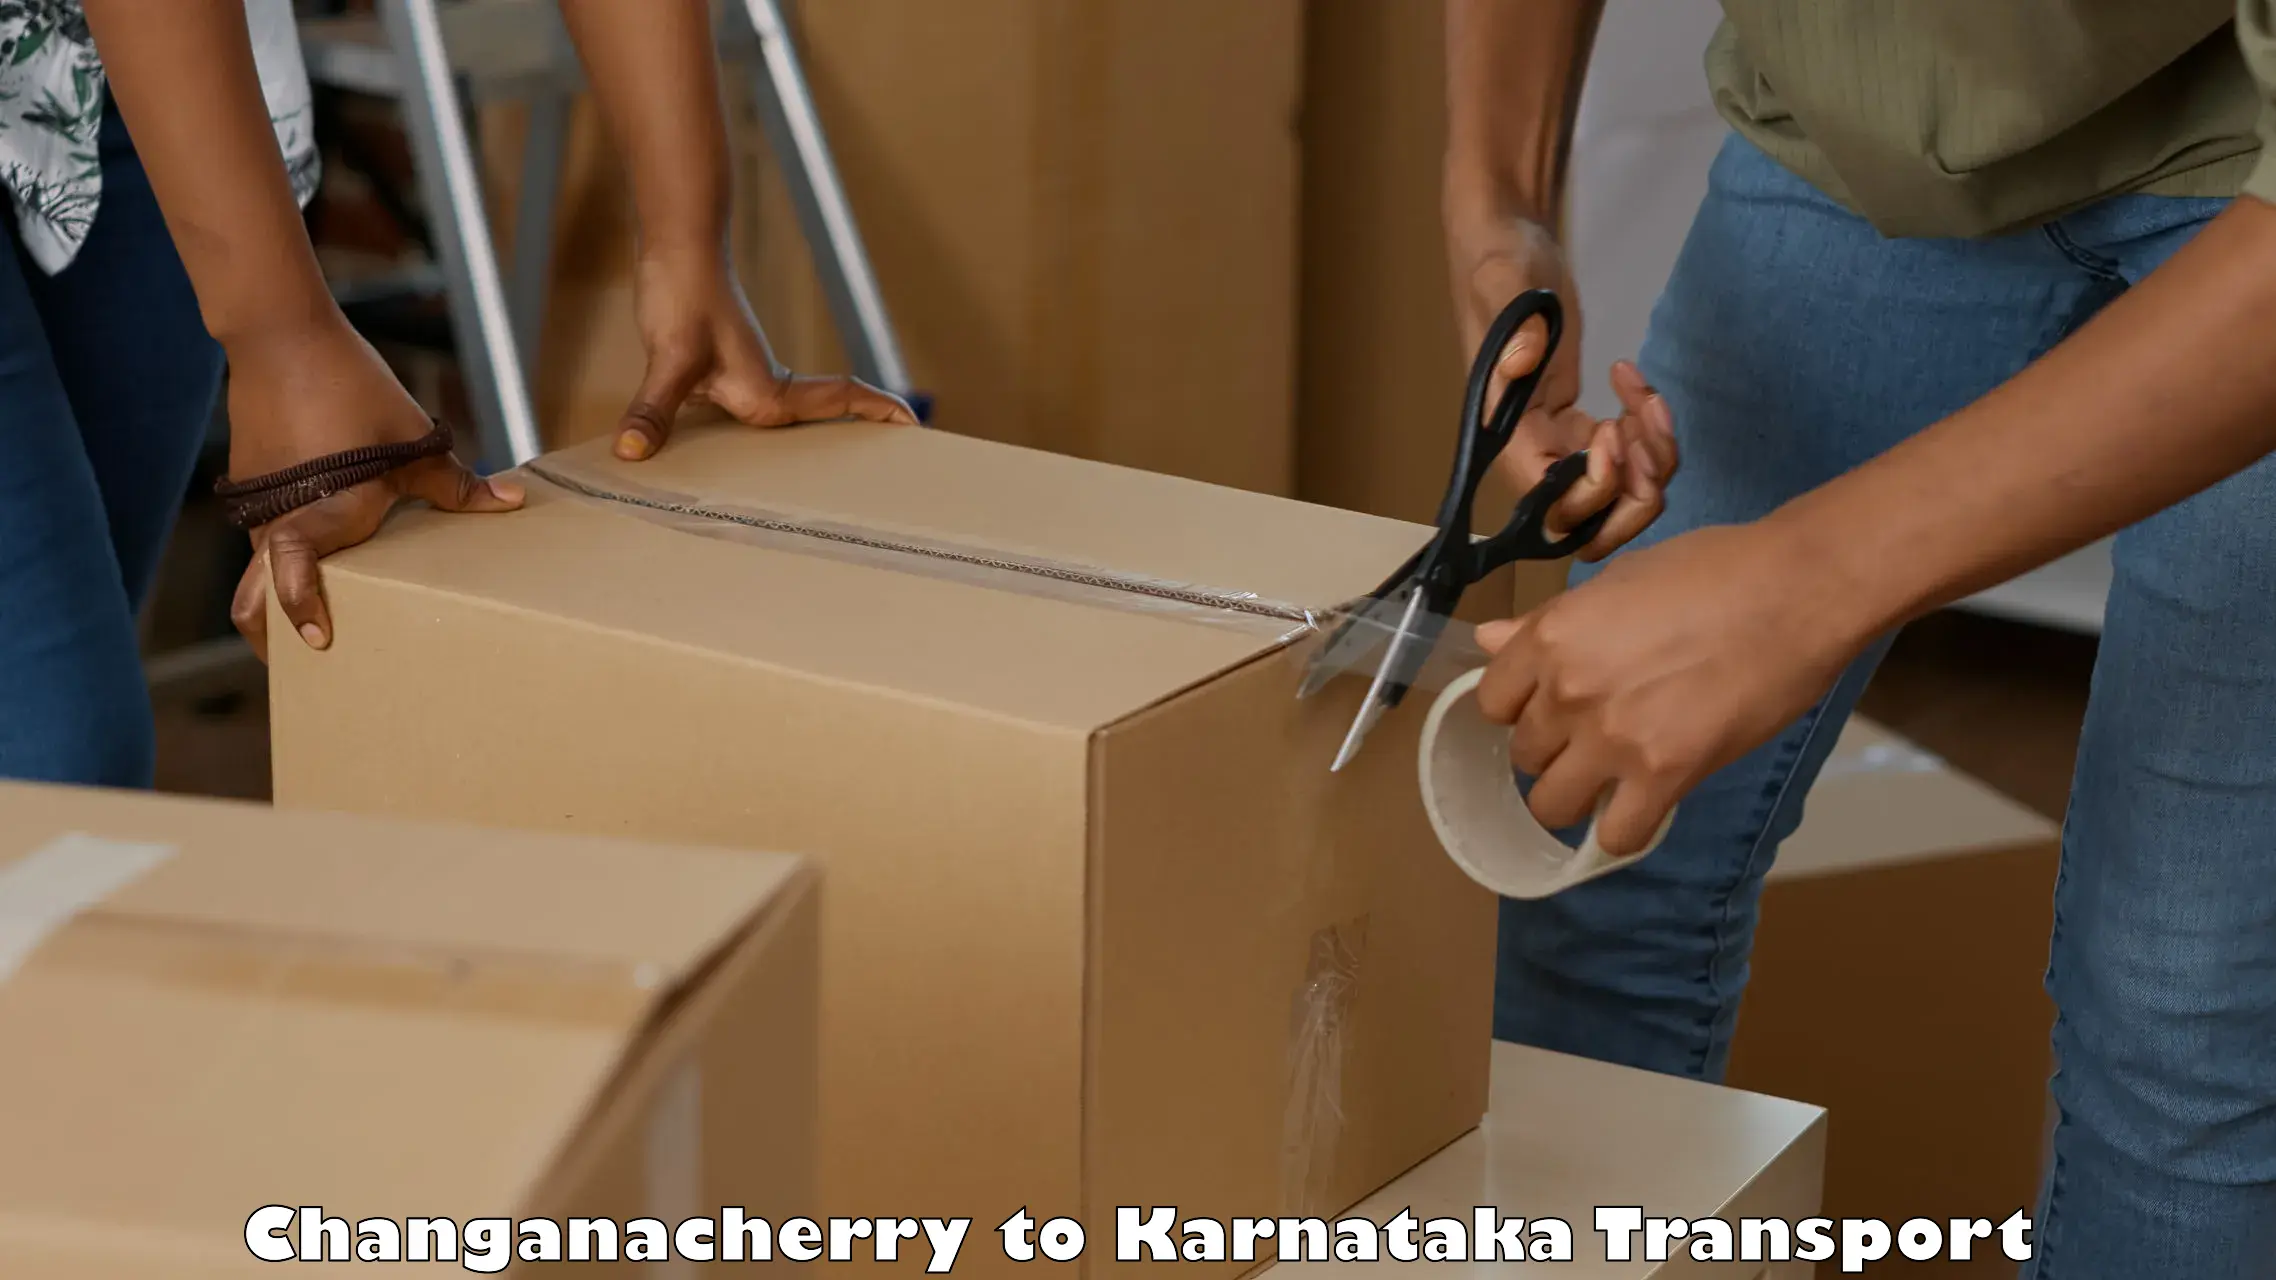 Best transport services in India Changanacherry to Chikkanayakanahalli